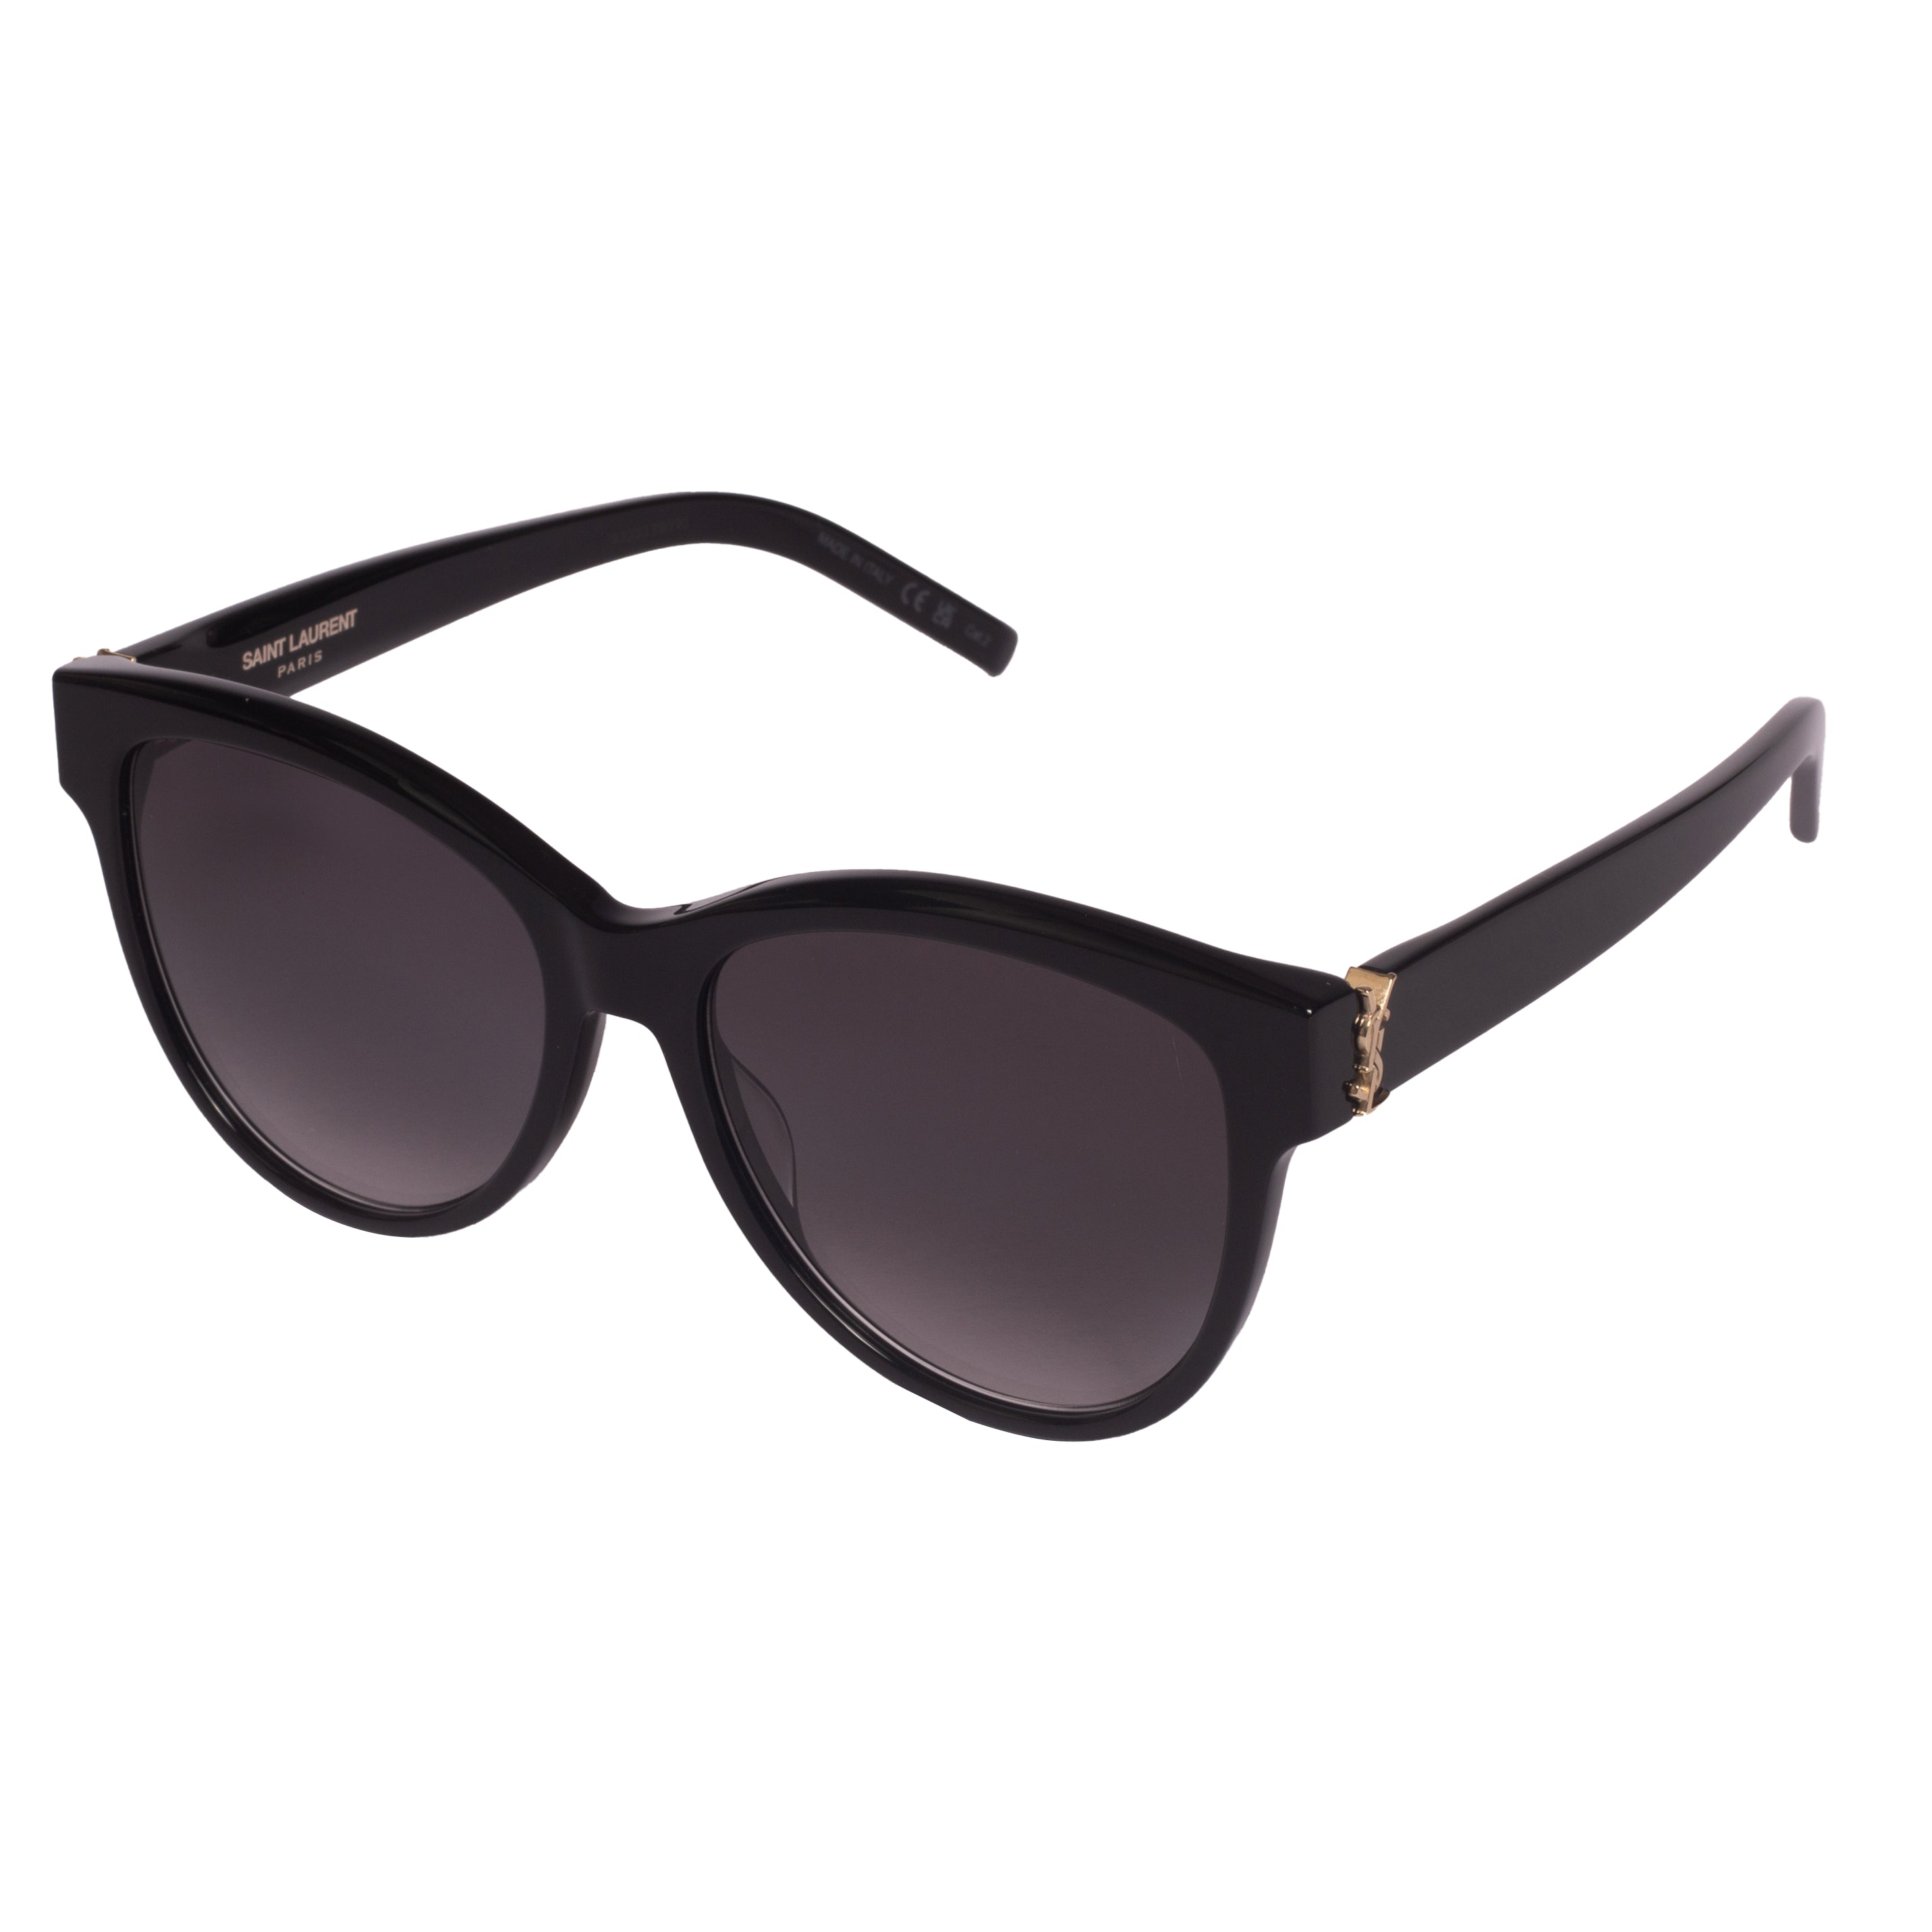 Saint Laurent-SL M107-55-002 Sunglasses - Premium Sunglasses from Saint Laurent - Just Rs. 26420! Shop now at Laxmi Opticians